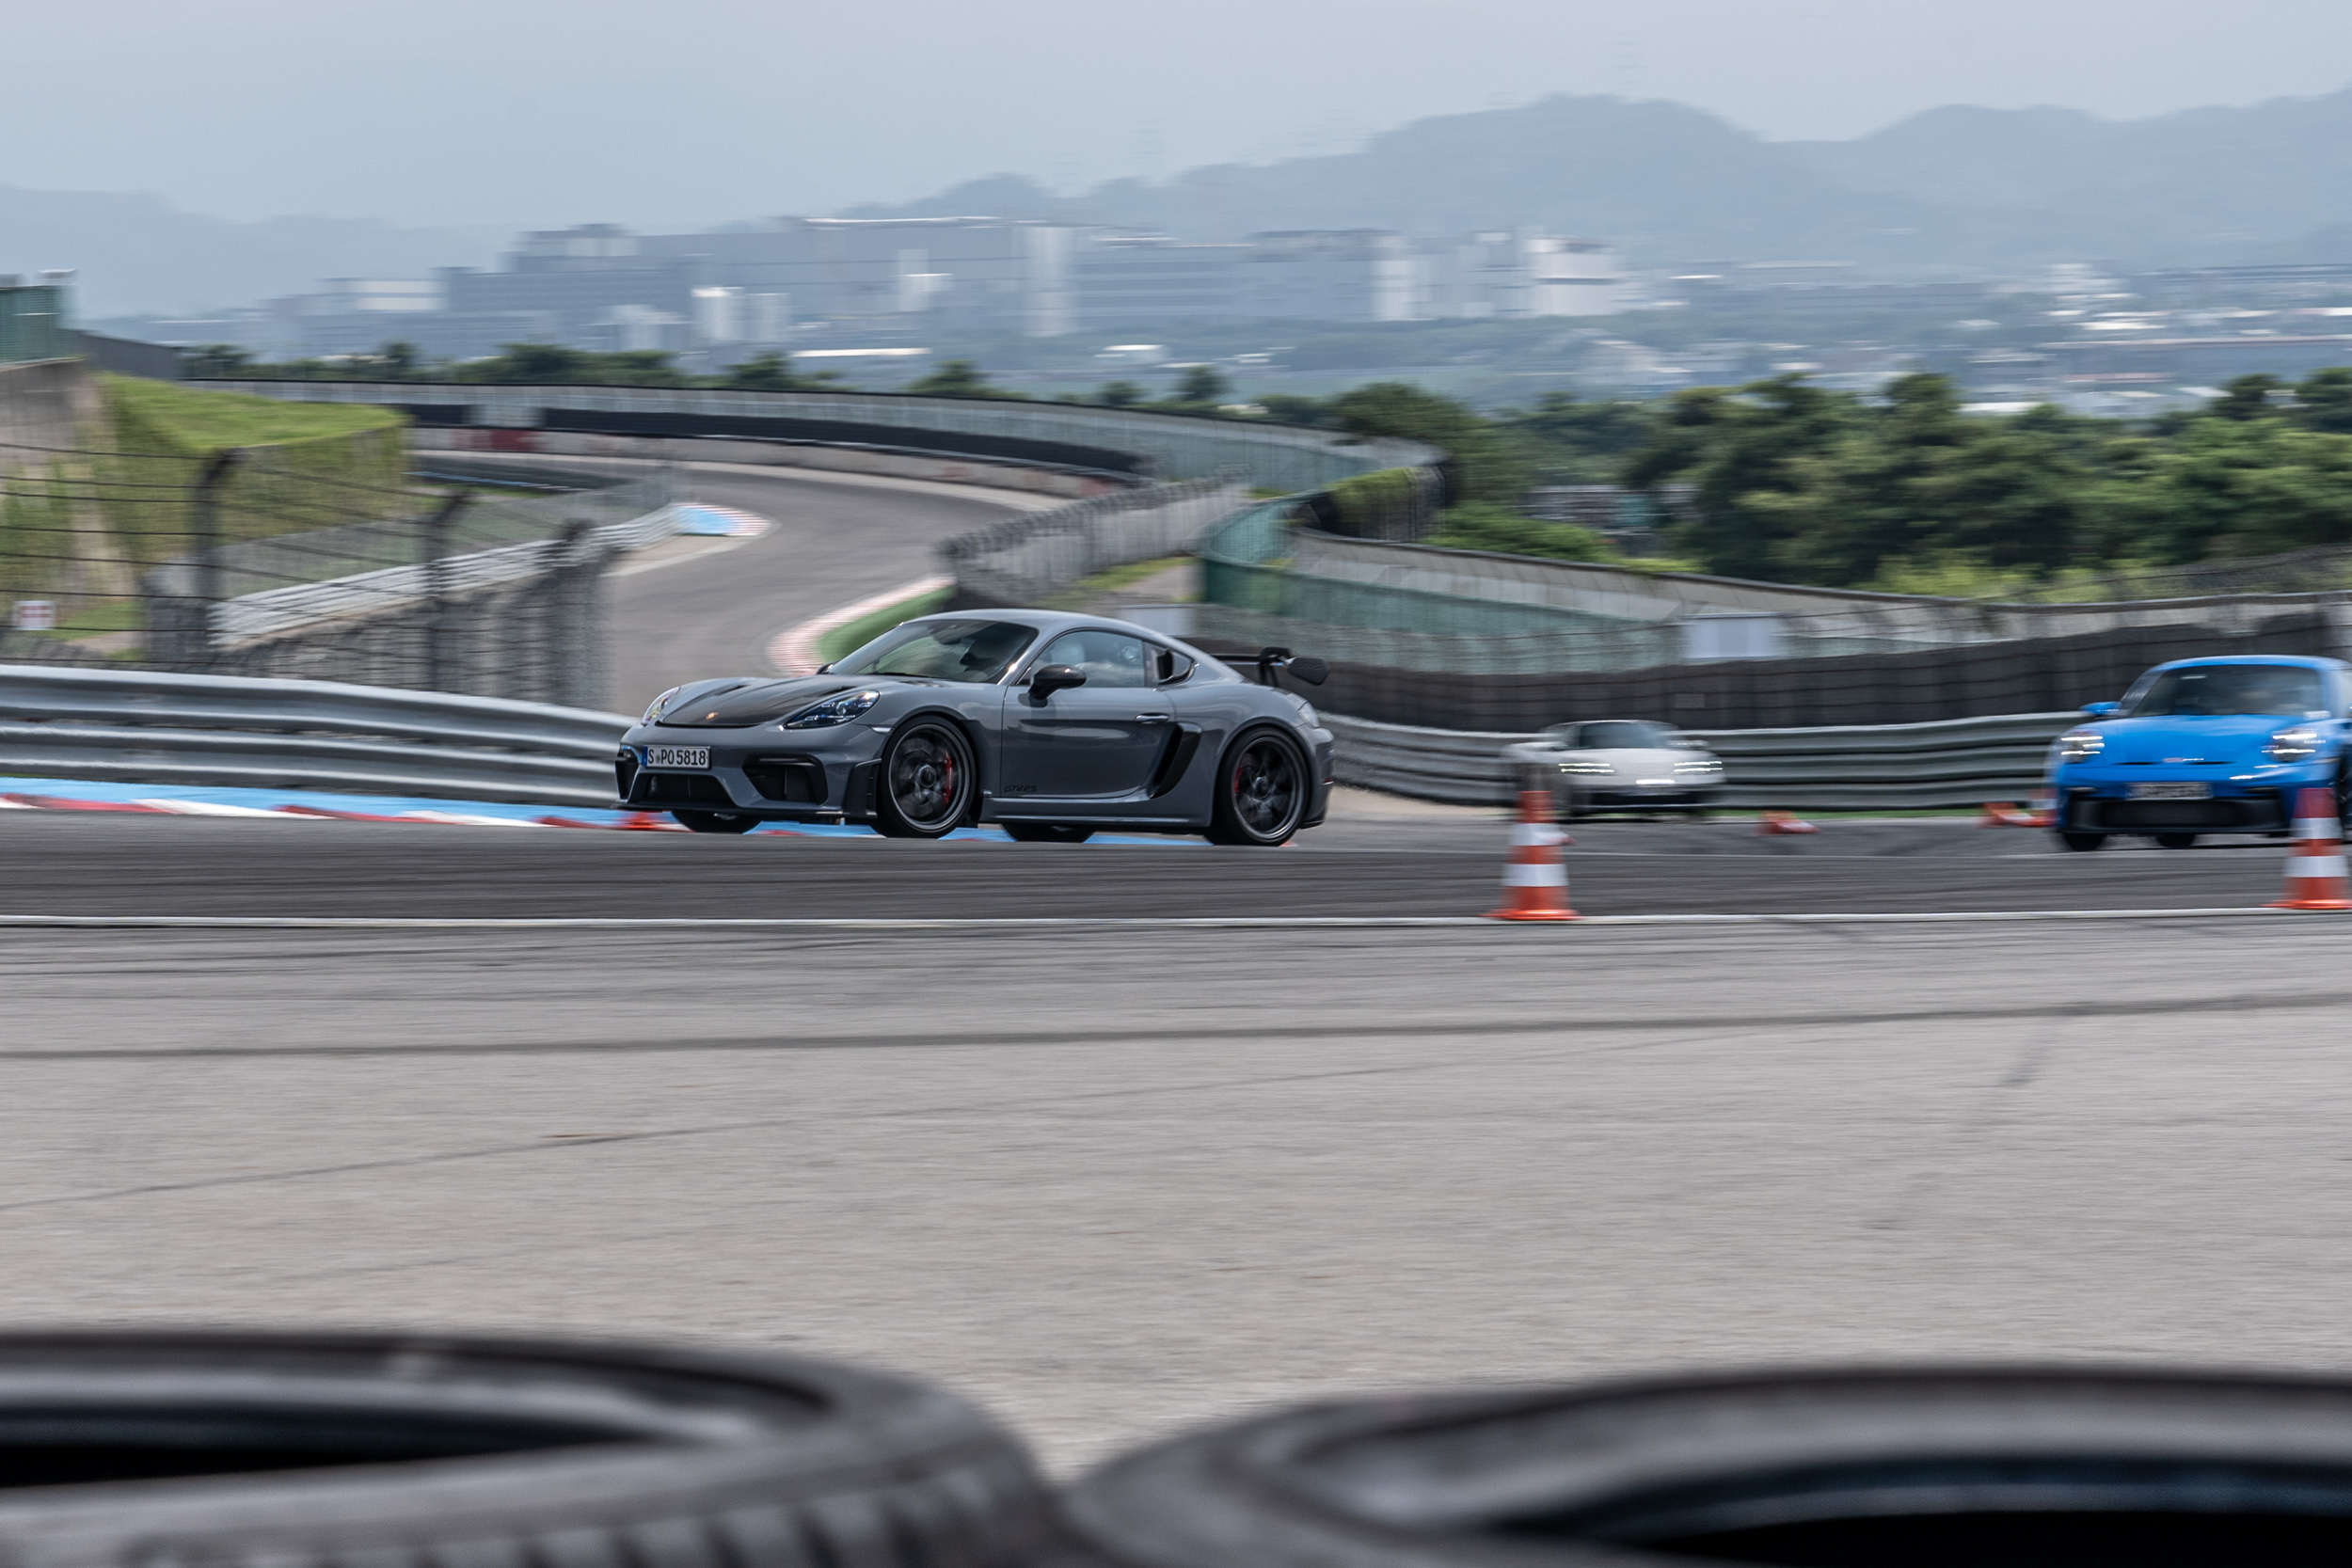 把GT3的4.0升自然進氣引擎擺到了車身中央、與駕駛間的距離更接近，且轉速錶直指10000rpm的顯示，光是還未駛出pit區就讓人頭皮發麻。